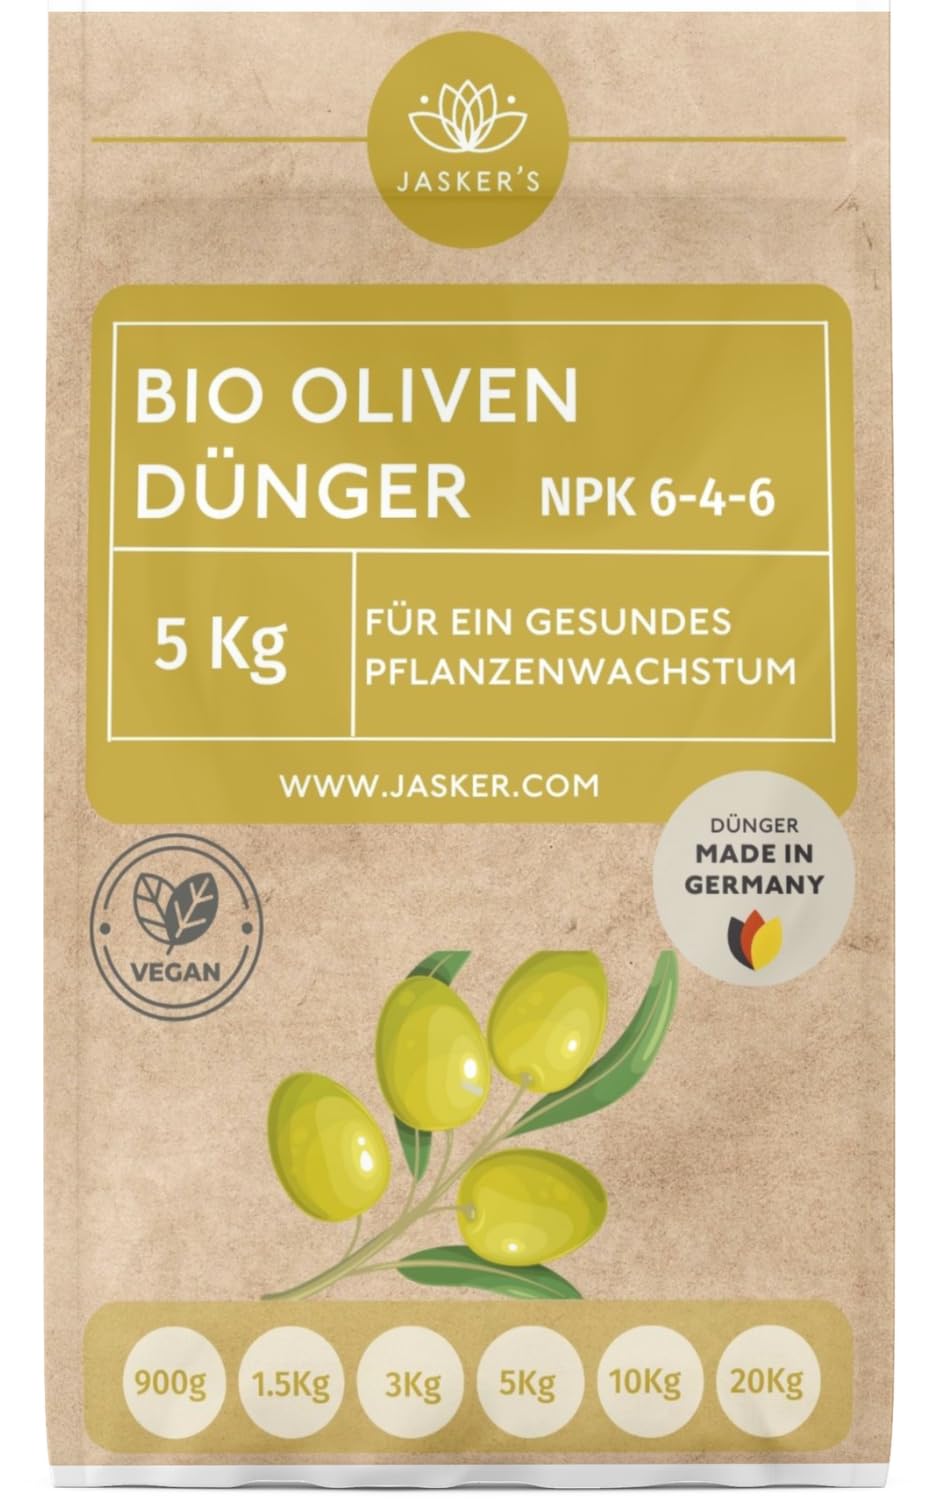 Bio Olivenbaum Dünger 5 Kg Langzeitdünger - 100% organischer Dünger für Olivenbaum - Mediterraner Dünger für Olivenbaum im Garten & Kübel - Olivenbaumdünger - Oliven Dünger